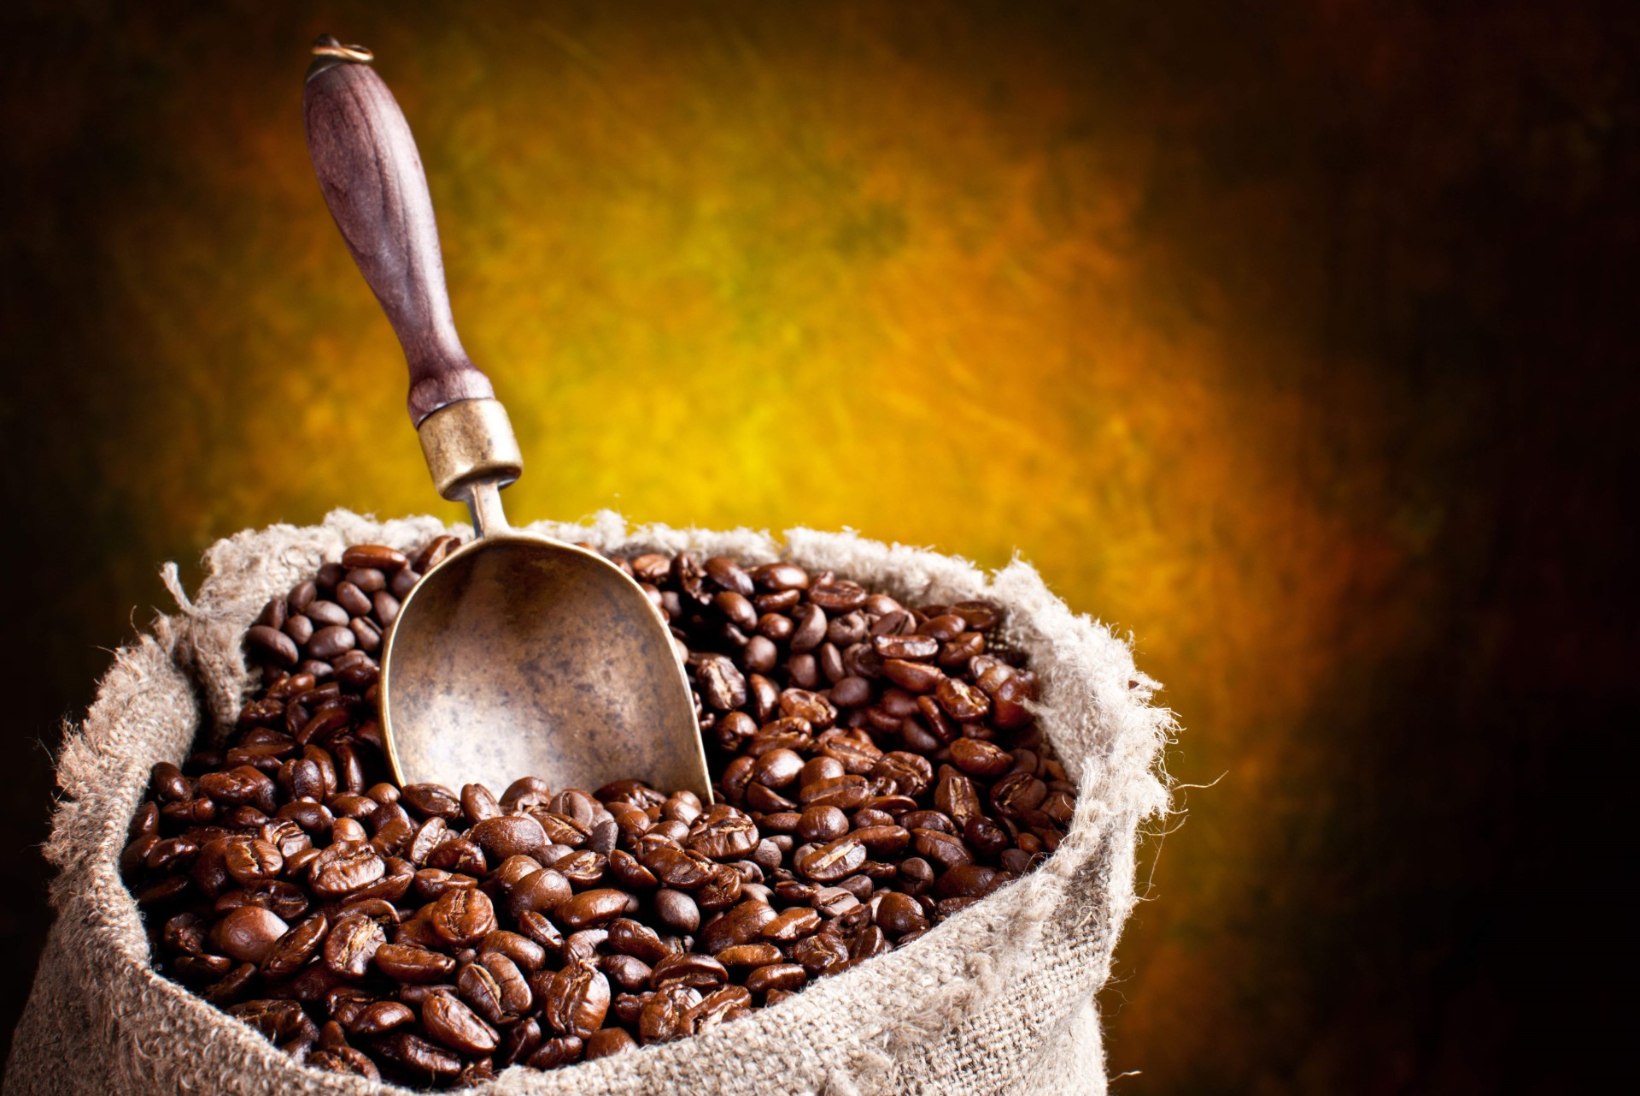 Pool kohvi maitsest sõltub röstijast ja joogi valmistajast